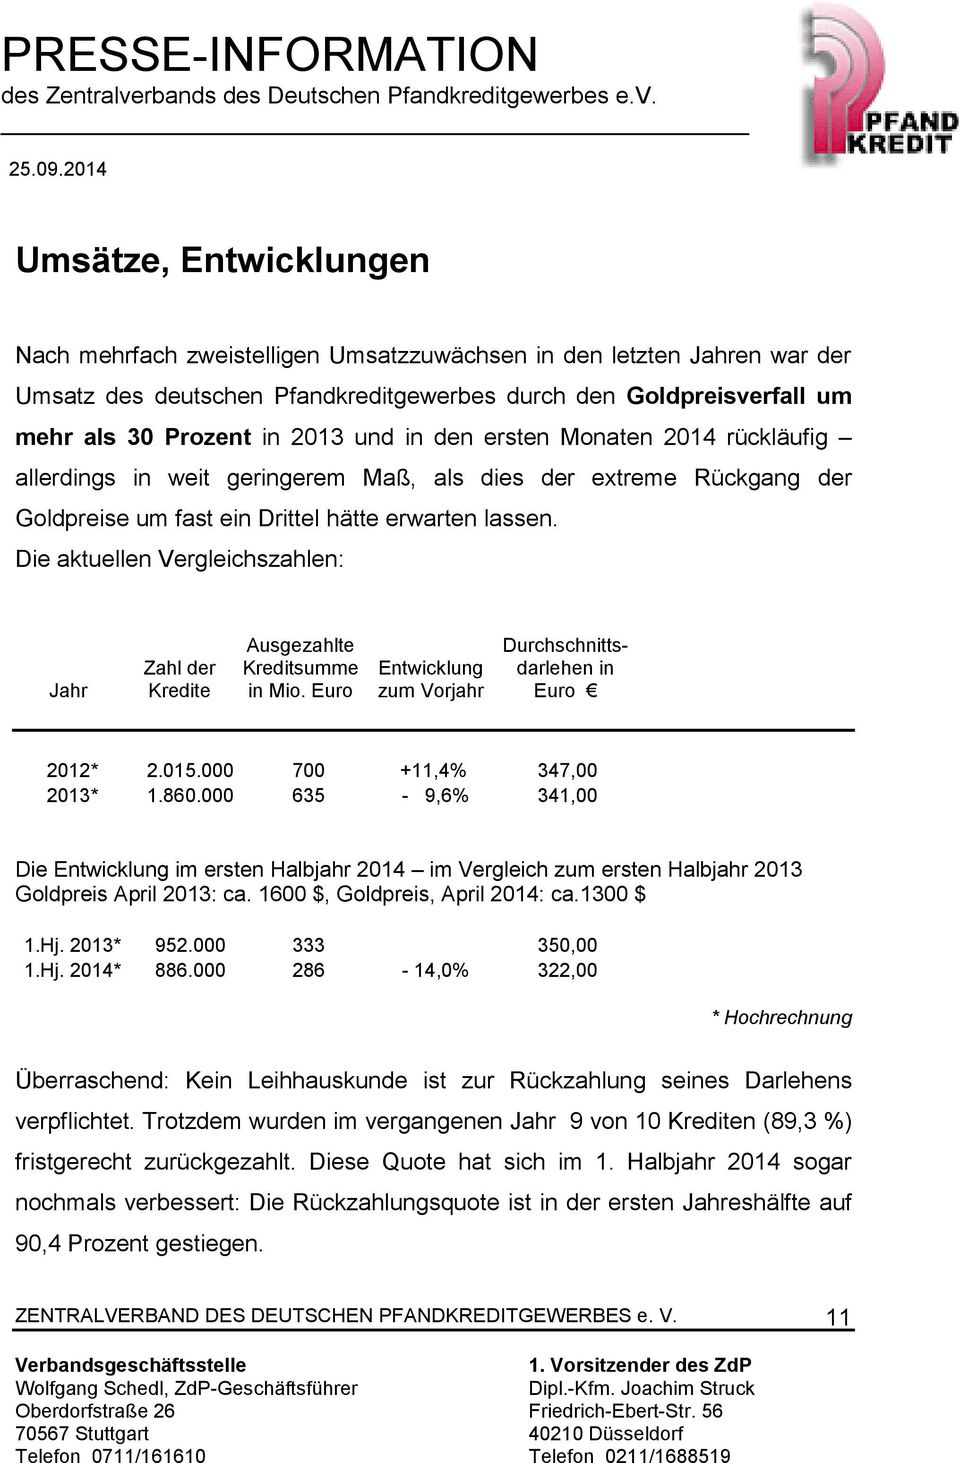 Die aktuellen Vergleichszahlen: Jahr Zahl der Kredite Ausgezahlte Kreditsumme in Mio. Euro Entwicklung zum Vorjahr Durchschnittsdarlehen in Euro 2012* 2.015.000 700 +11,4% 347,00 2013* 1.860.